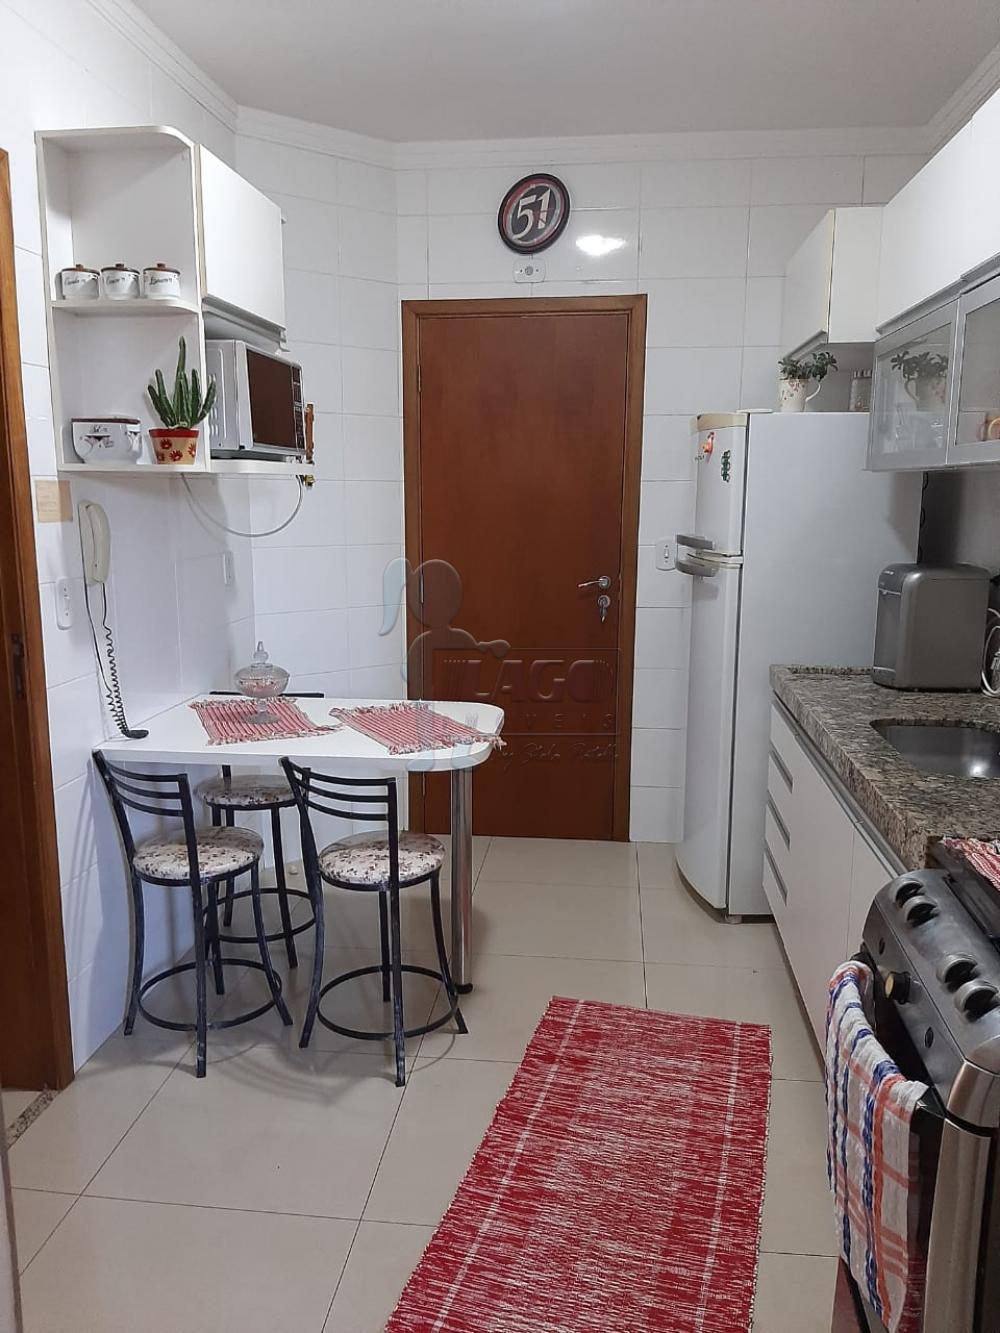 Comprar Apartamentos / Padrão em Ribeirão Preto R$ 595.000,00 - Foto 6